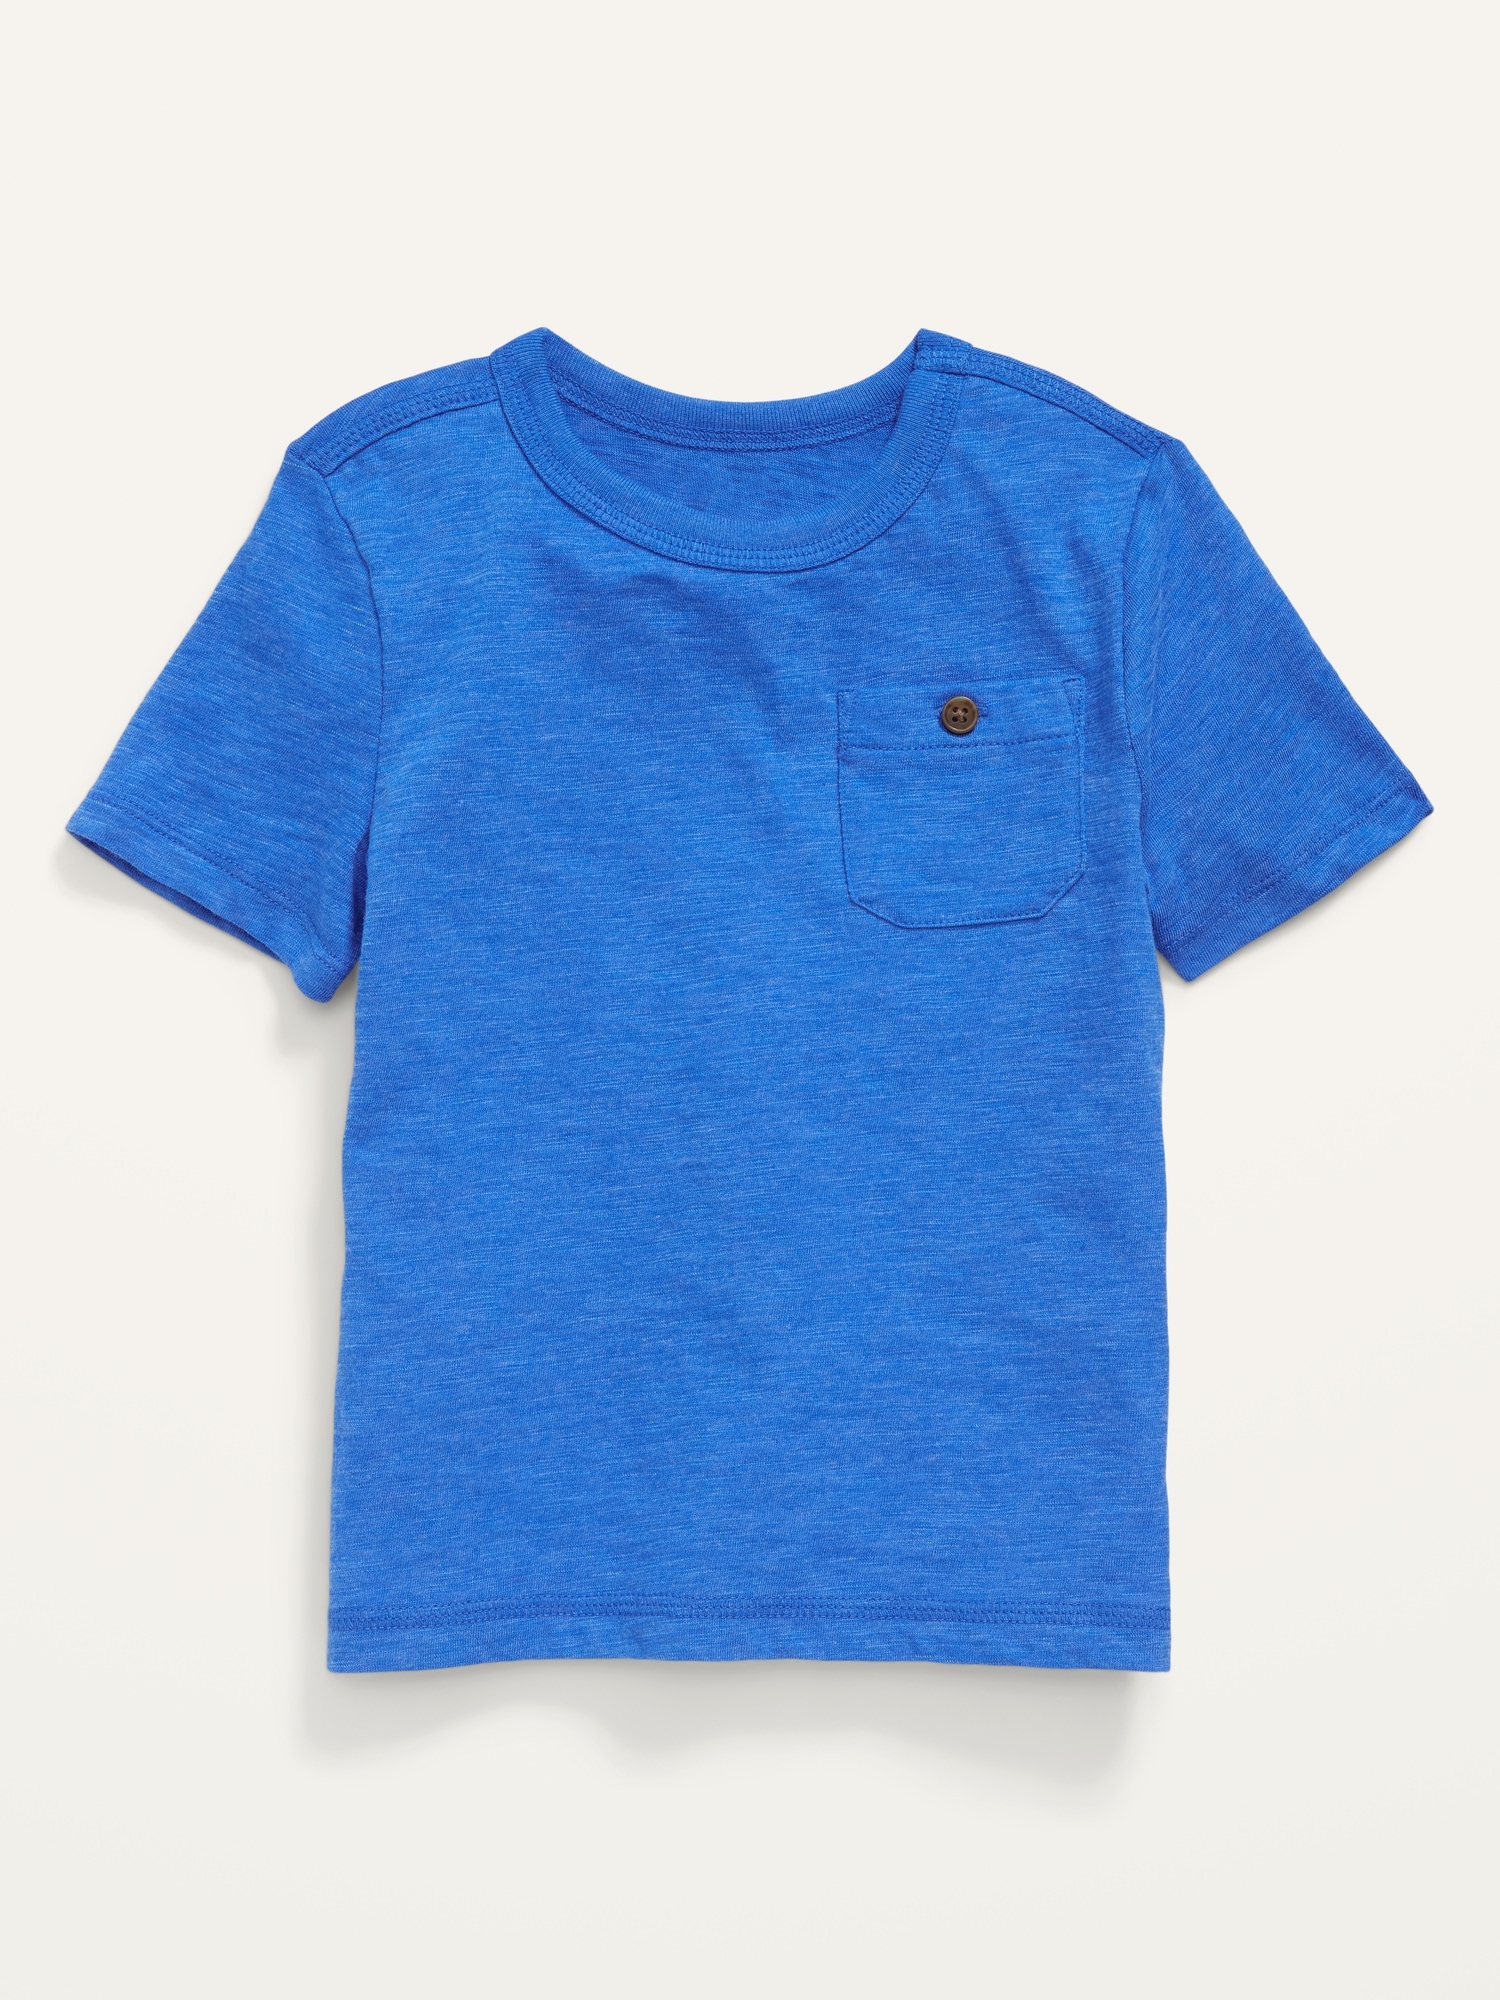 Old Navy Solid Slub-Knit Pocket T-Shirt for Toddler Boys blue. 1